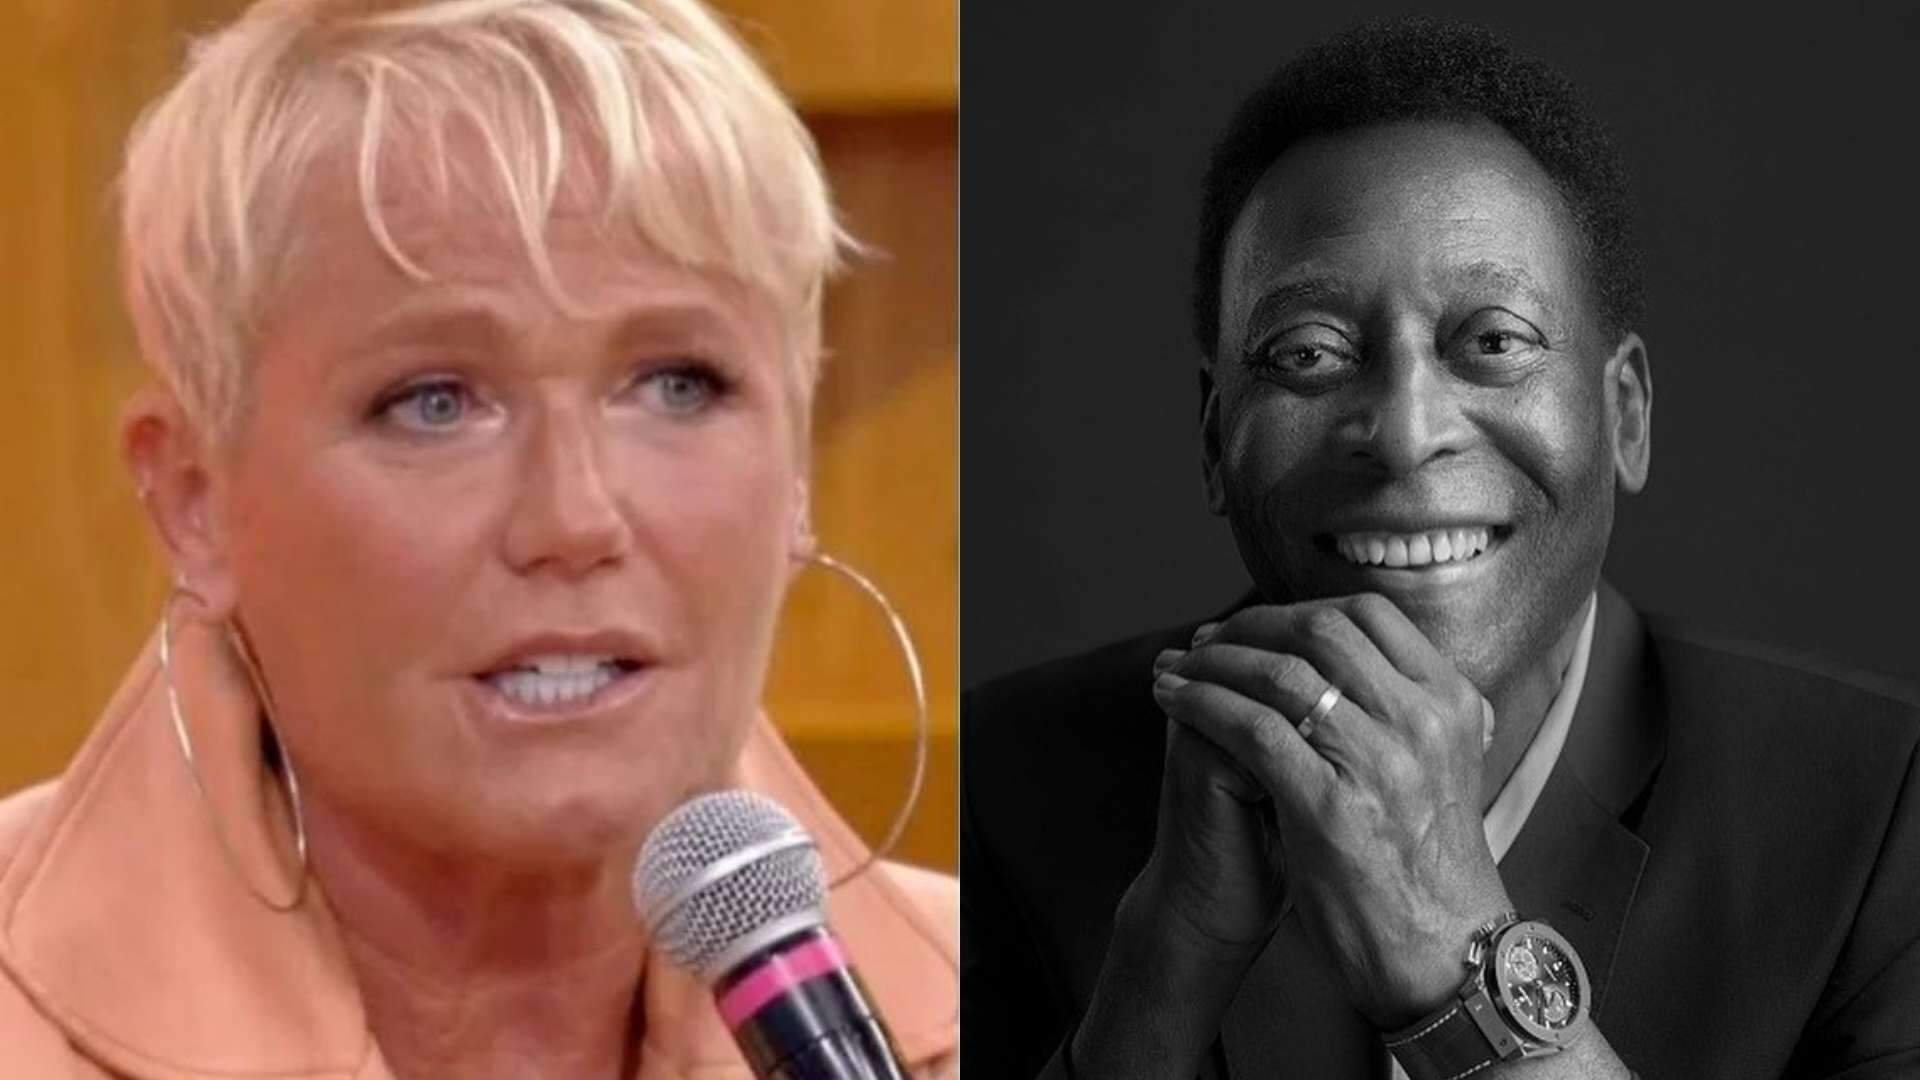 Xuxa se revolta com falta de respeito em velório de Pelé e detona: “Por que tem gente sorrindo?” - Metropolitana FM